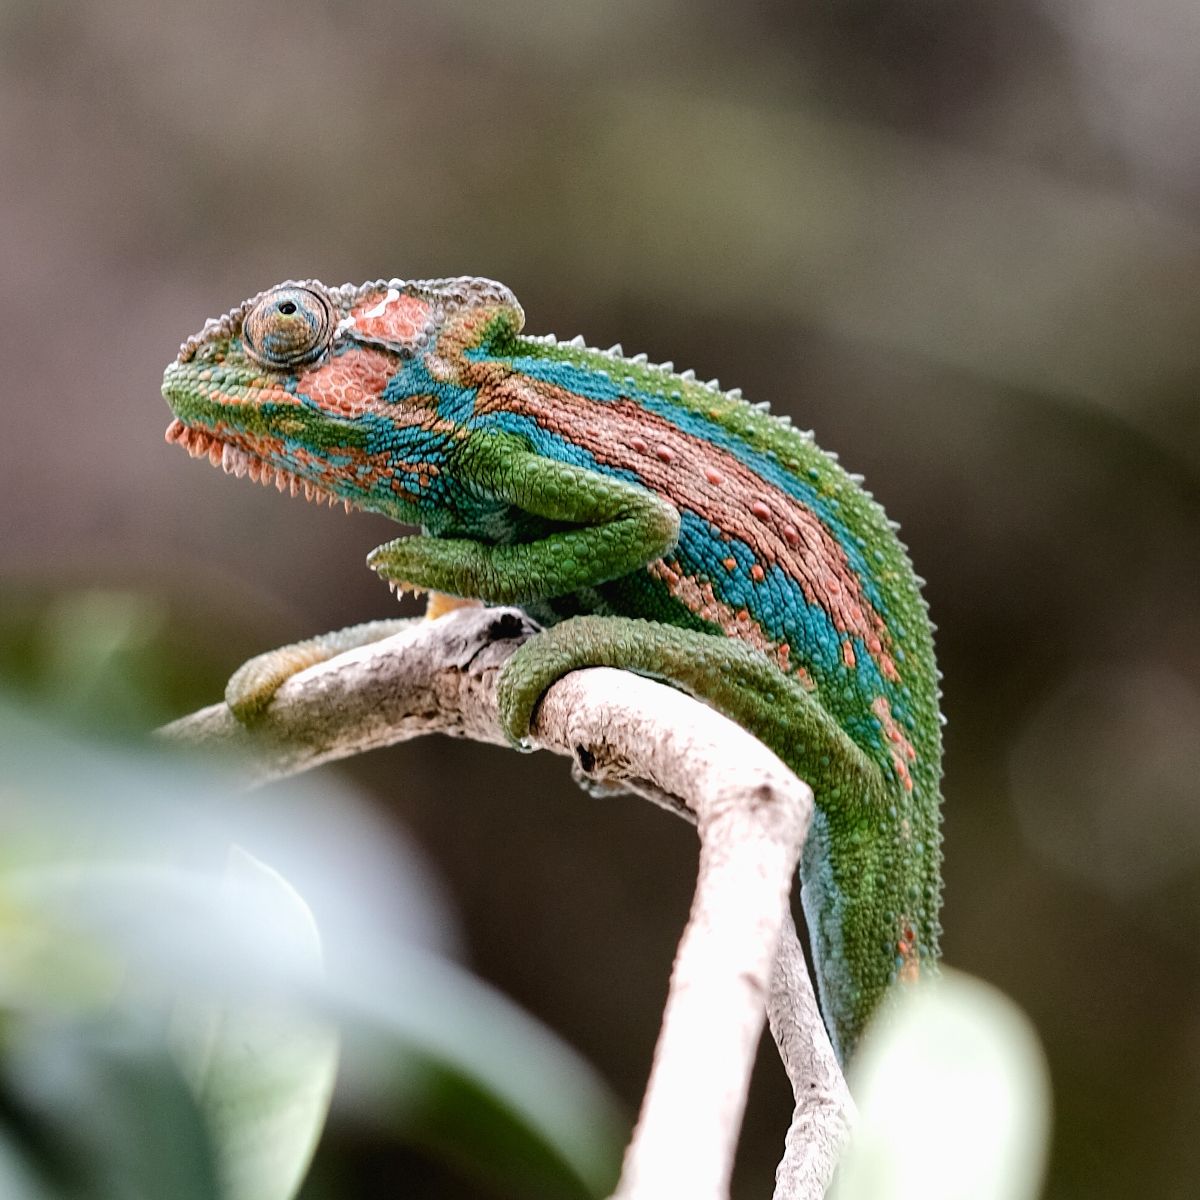 Photo: Chameleon